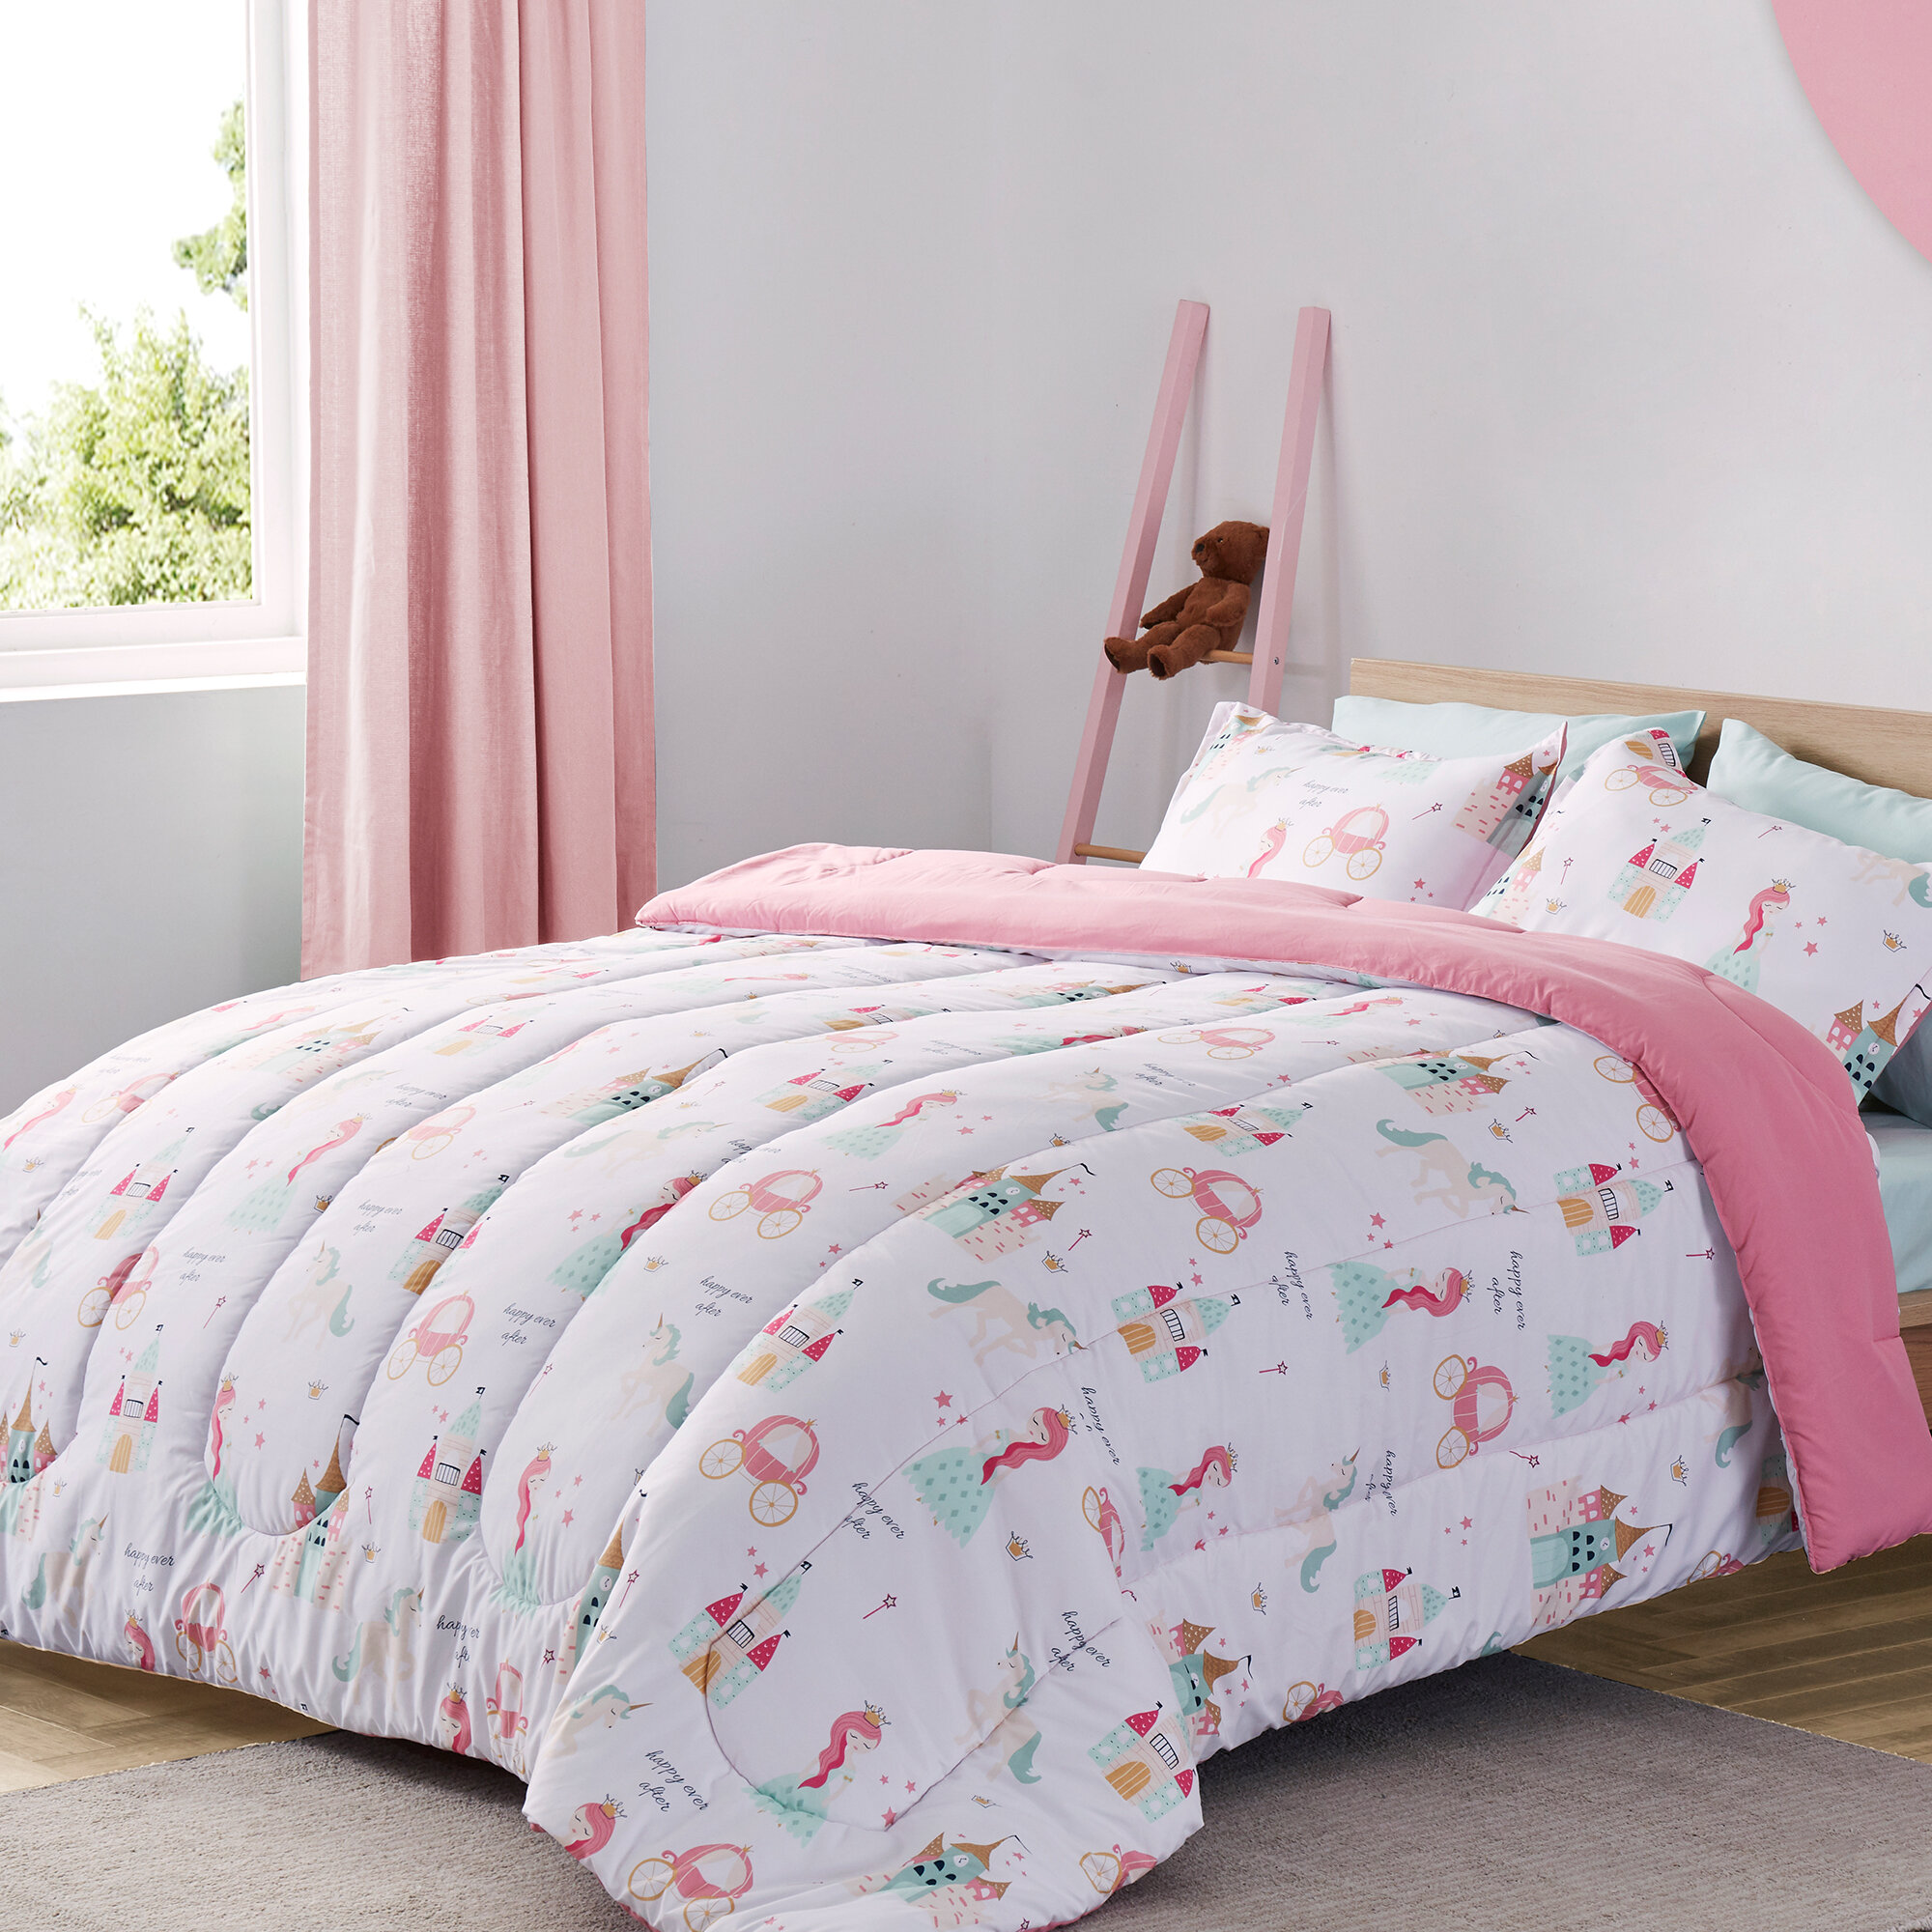 Isabelle Max Bridlington Princess Castle Comforter Set Reviews Wayfair